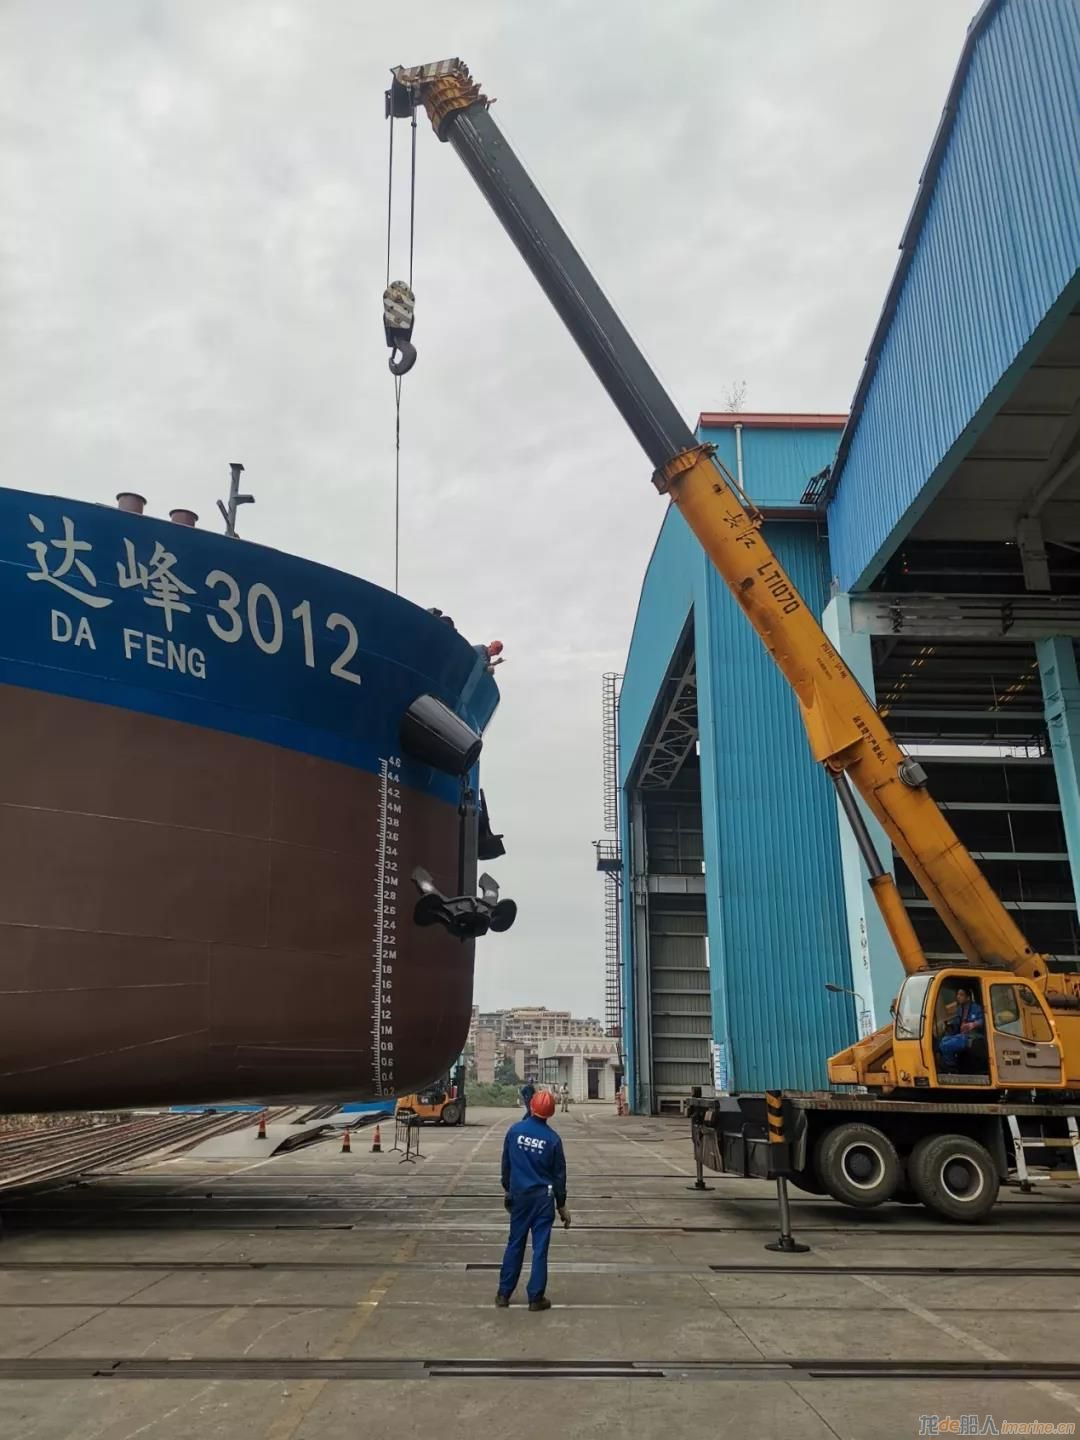 中船广西“绿色珠江”工程3000DWT系列9#船“达峰3012”